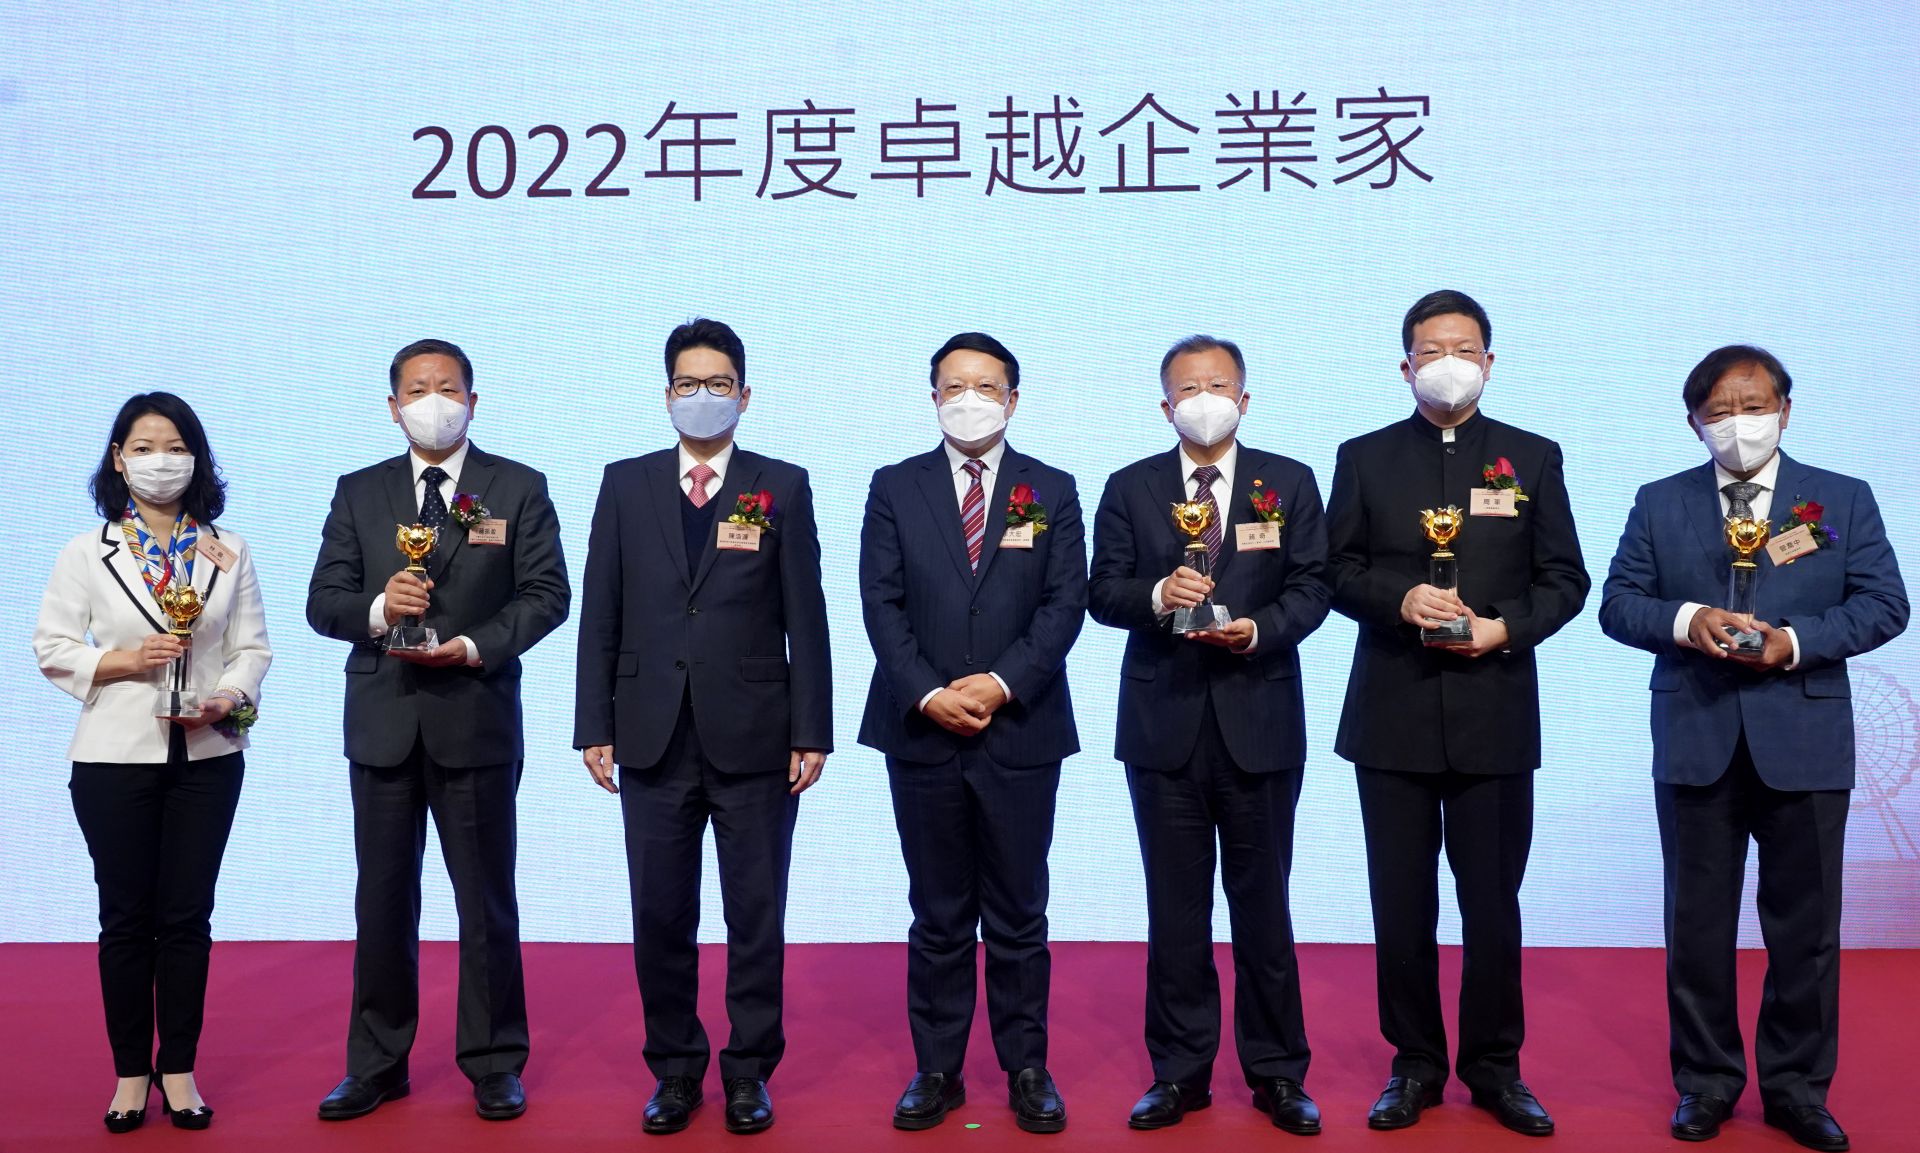 2022第十二屆香港國際金融論壇暨中國證券「金紫荊獎」頒獎典禮2022年12月20日在香港舉行。圖為卓越企業家獎項得獎者接受頒獎（大公報記者 林良堅 攝）。